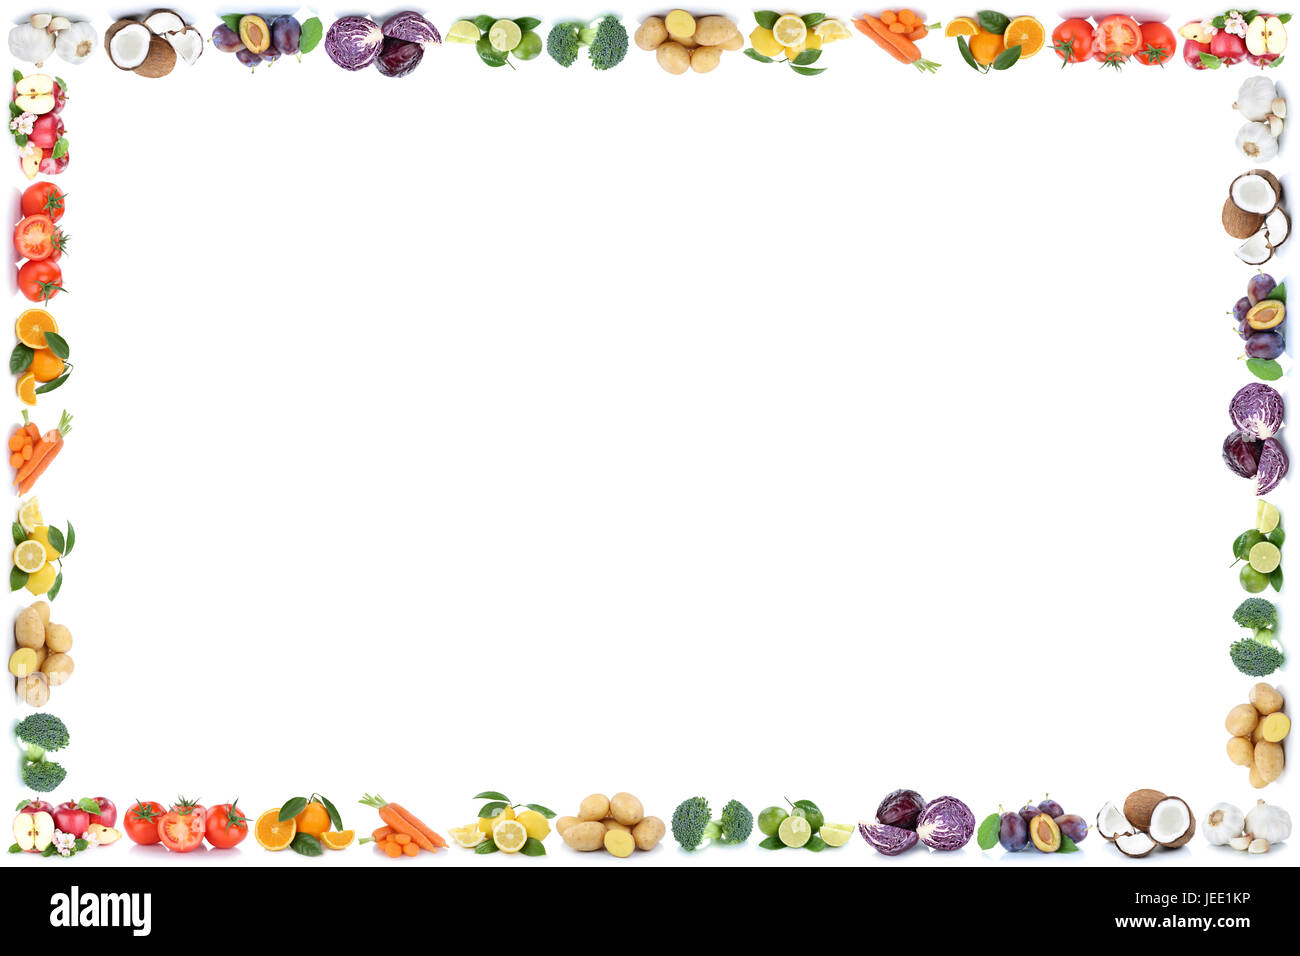 Les fruits et les légumes légumes oranges pommes cadre alimentaire copyspace copiez l'espace sur un fond blanc Banque D'Images